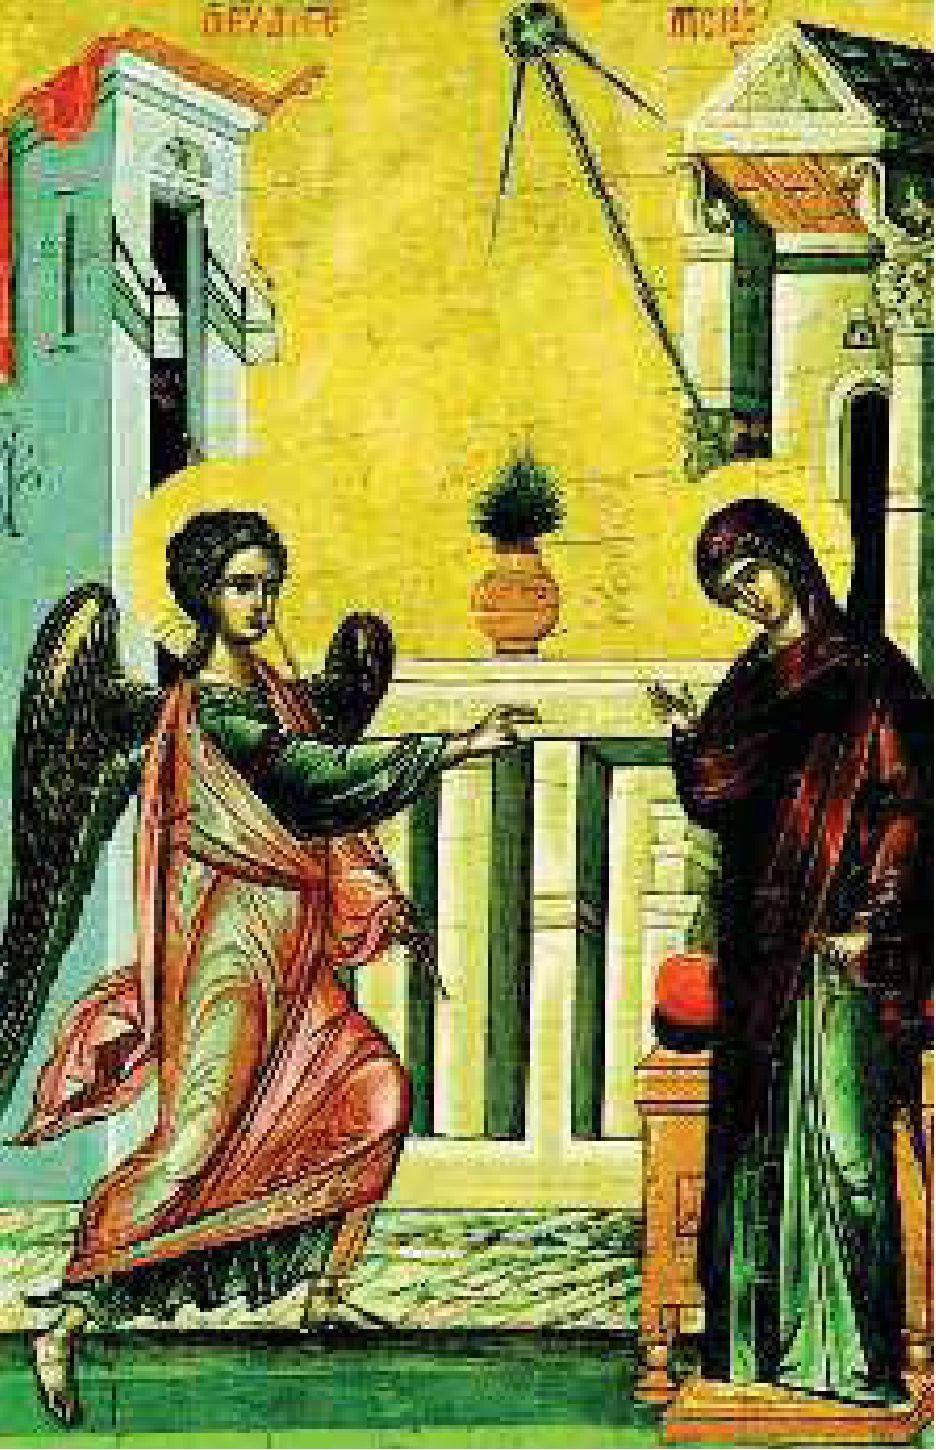 Στην εικόνα του Ευαγγελισμού της Ανατολικής Εκκλησίας ο άγγελος κρατάει σκήπτρο. Συμβολίζει την εξουσία που του έδωσε ο Θεός, για να μεταφέρει το θέλημά του.